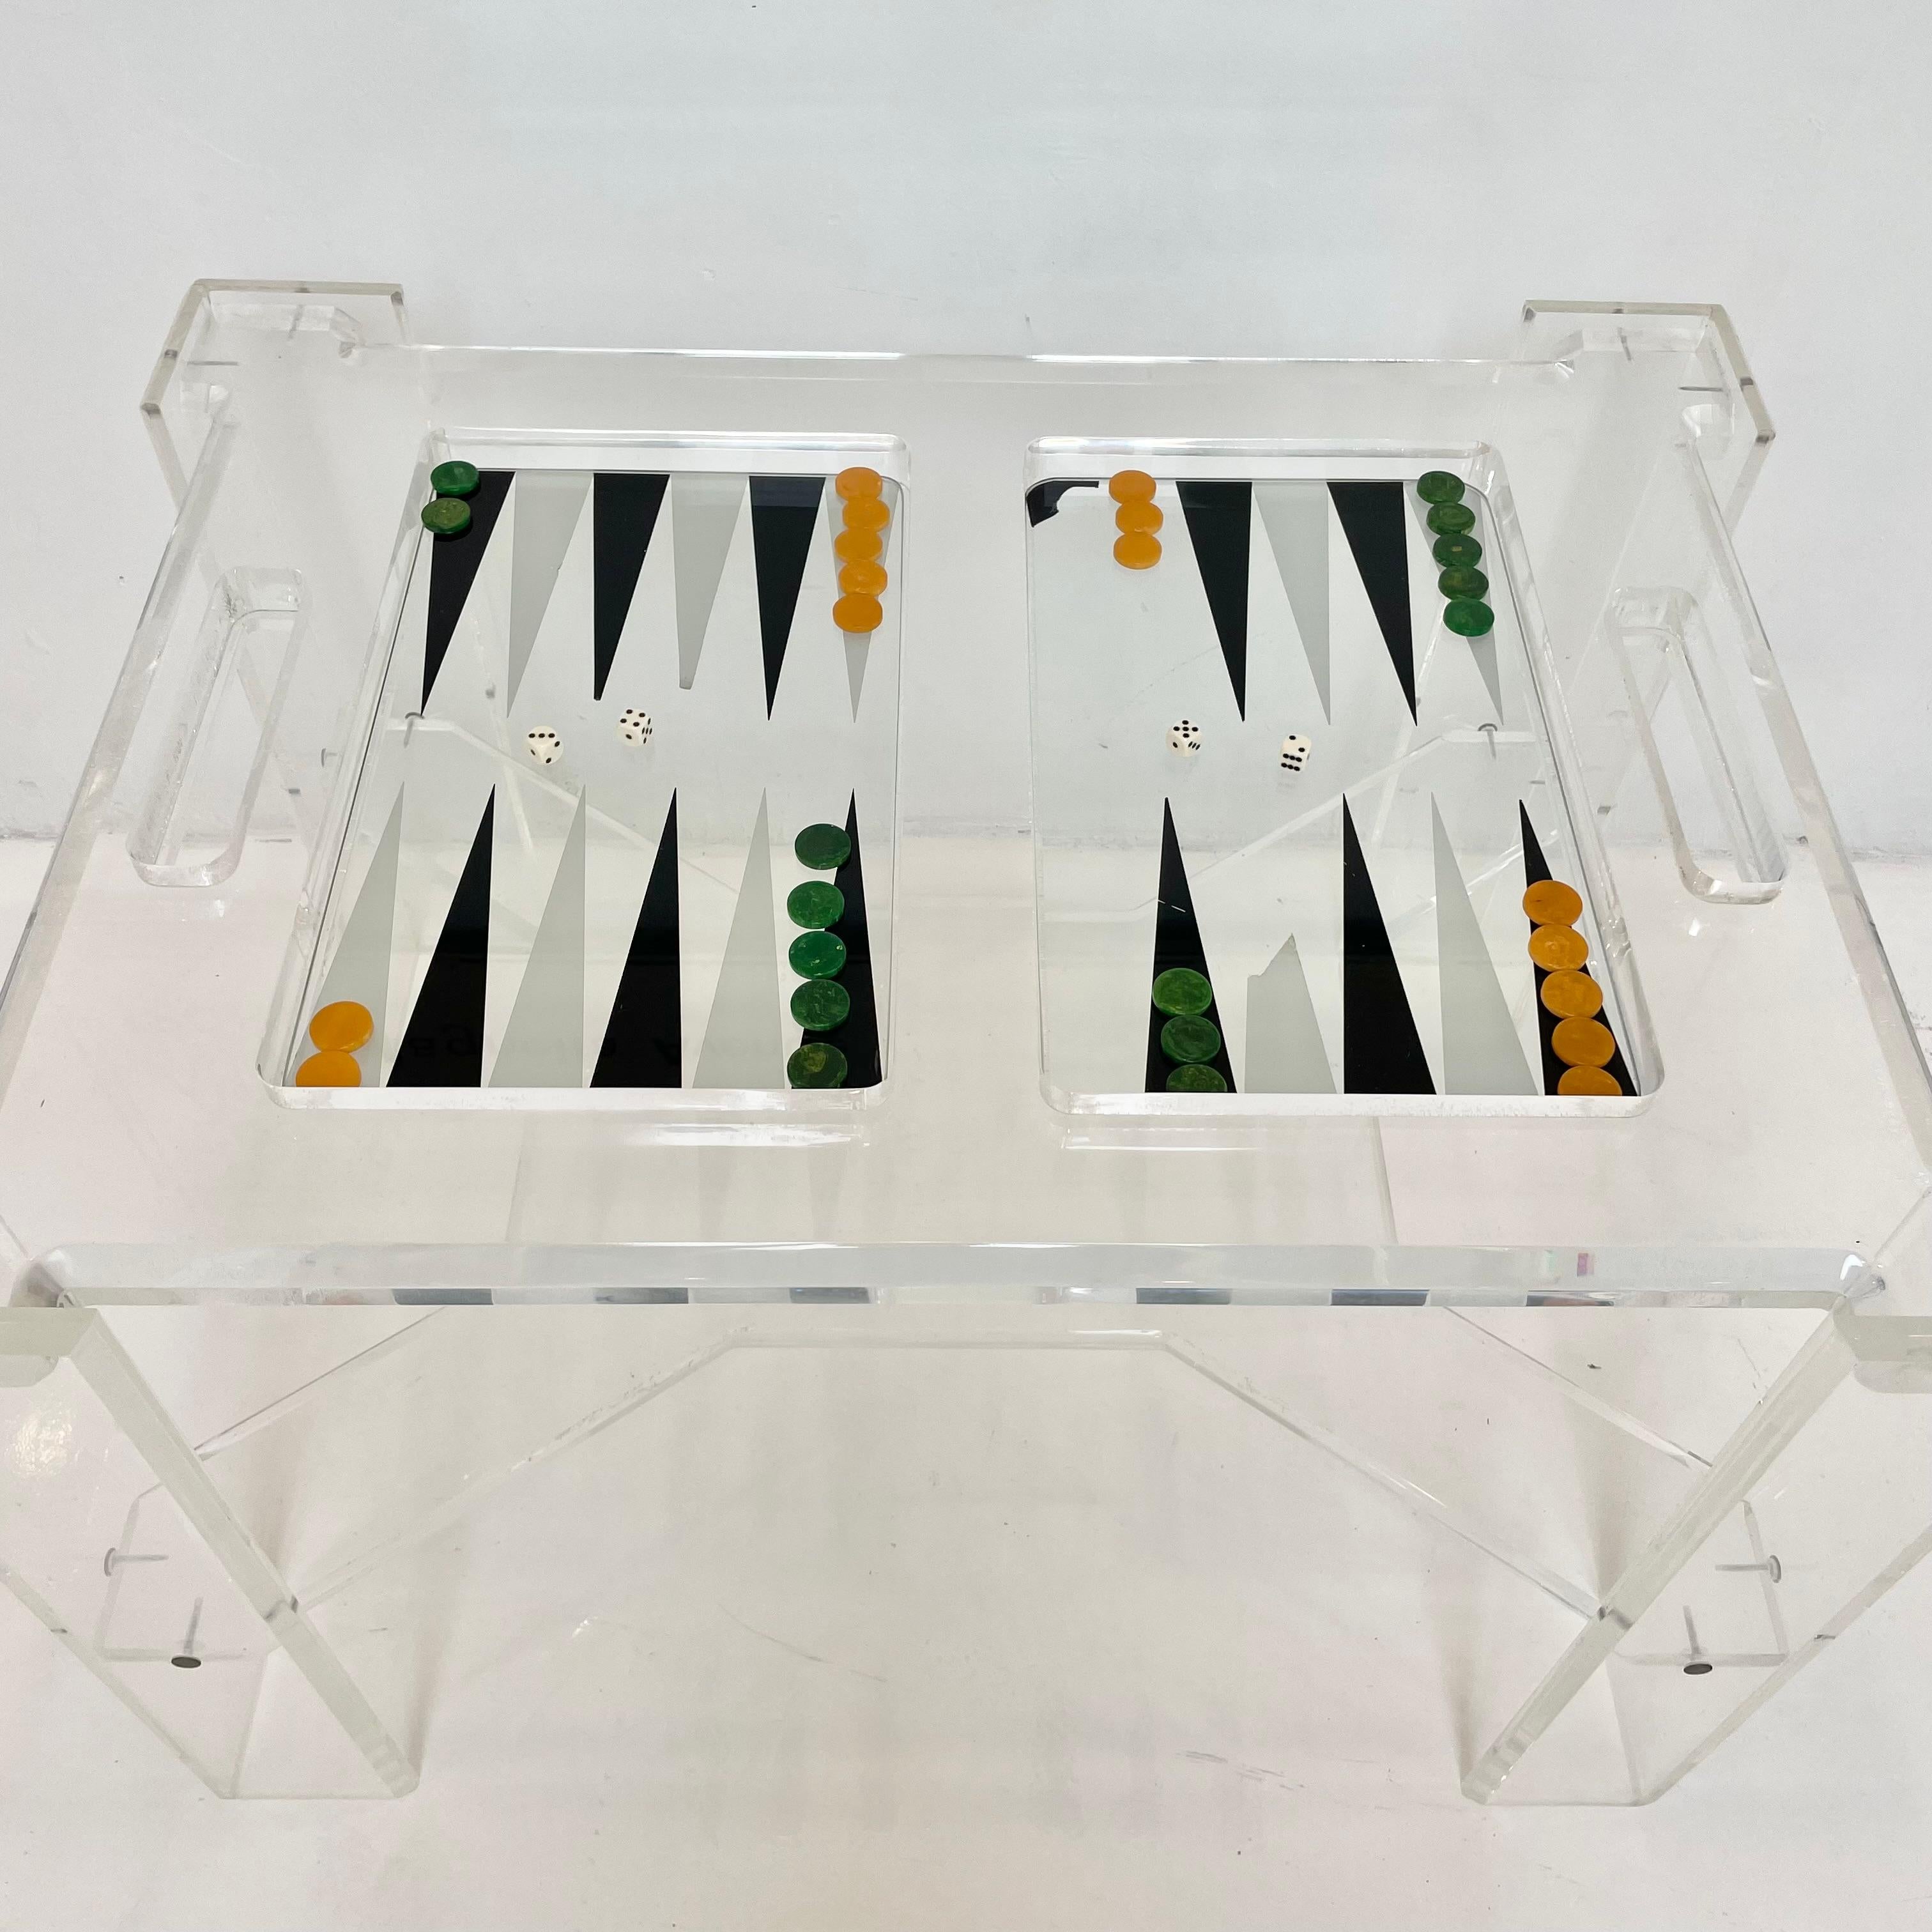 Facettierter Lucite Backgammon-Tisch mit abnehmbarer Glastischplatte. Der gesamte Tisch besteht aus dickem, klarem Lucite, das diesem Stück eine große Offenheit und einen minimalen Look verleiht. Lucite ist in gutem Zustand mit einigen Kratzern und